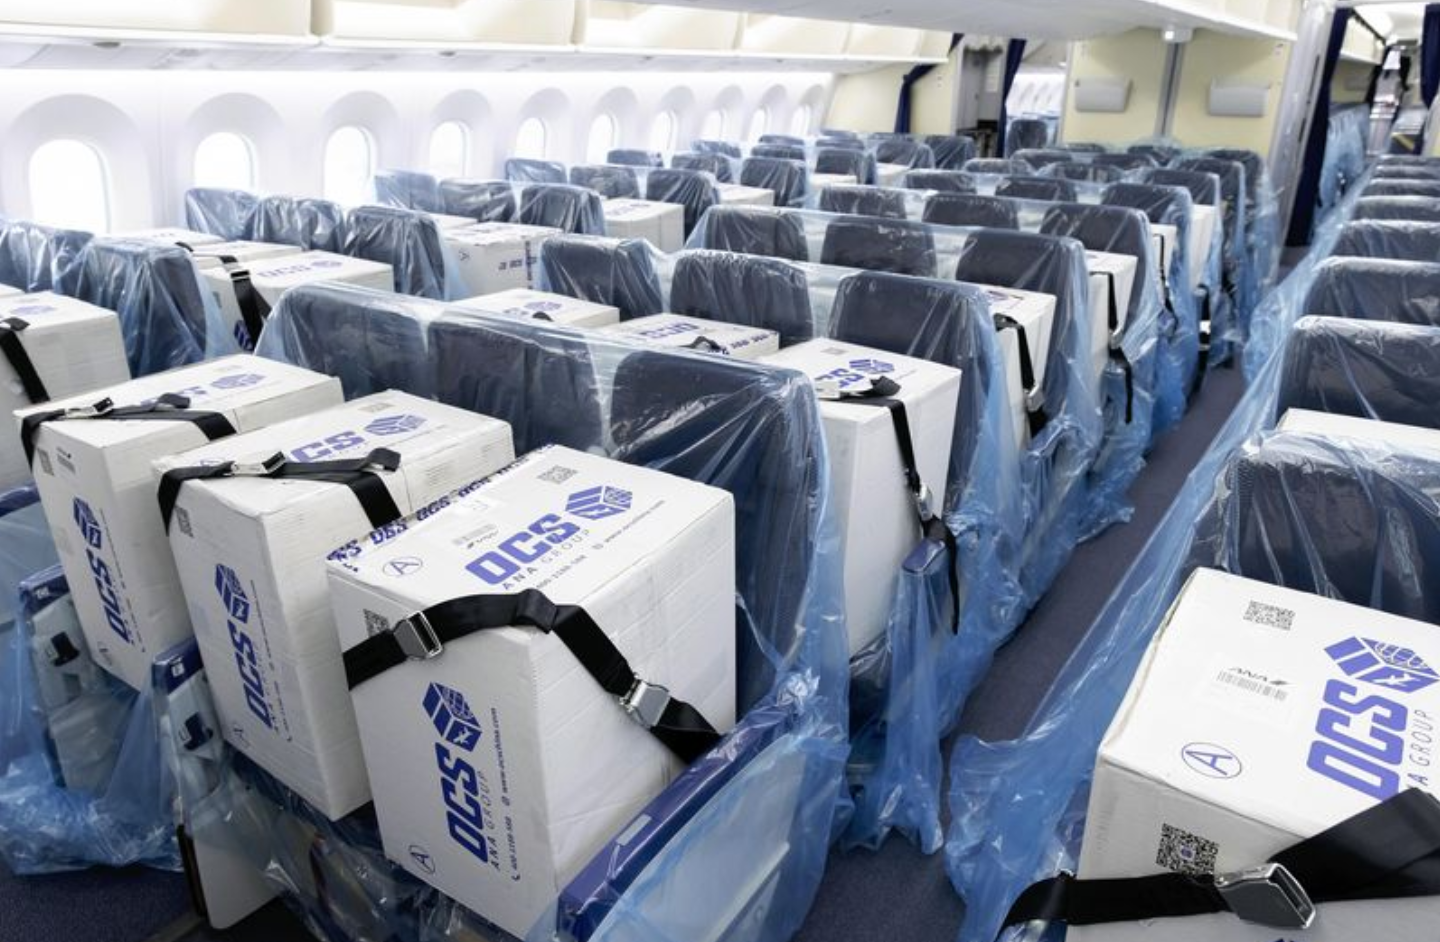 Transport de fournitures médicales sur un vol ANA - colis attachés sur les sièges